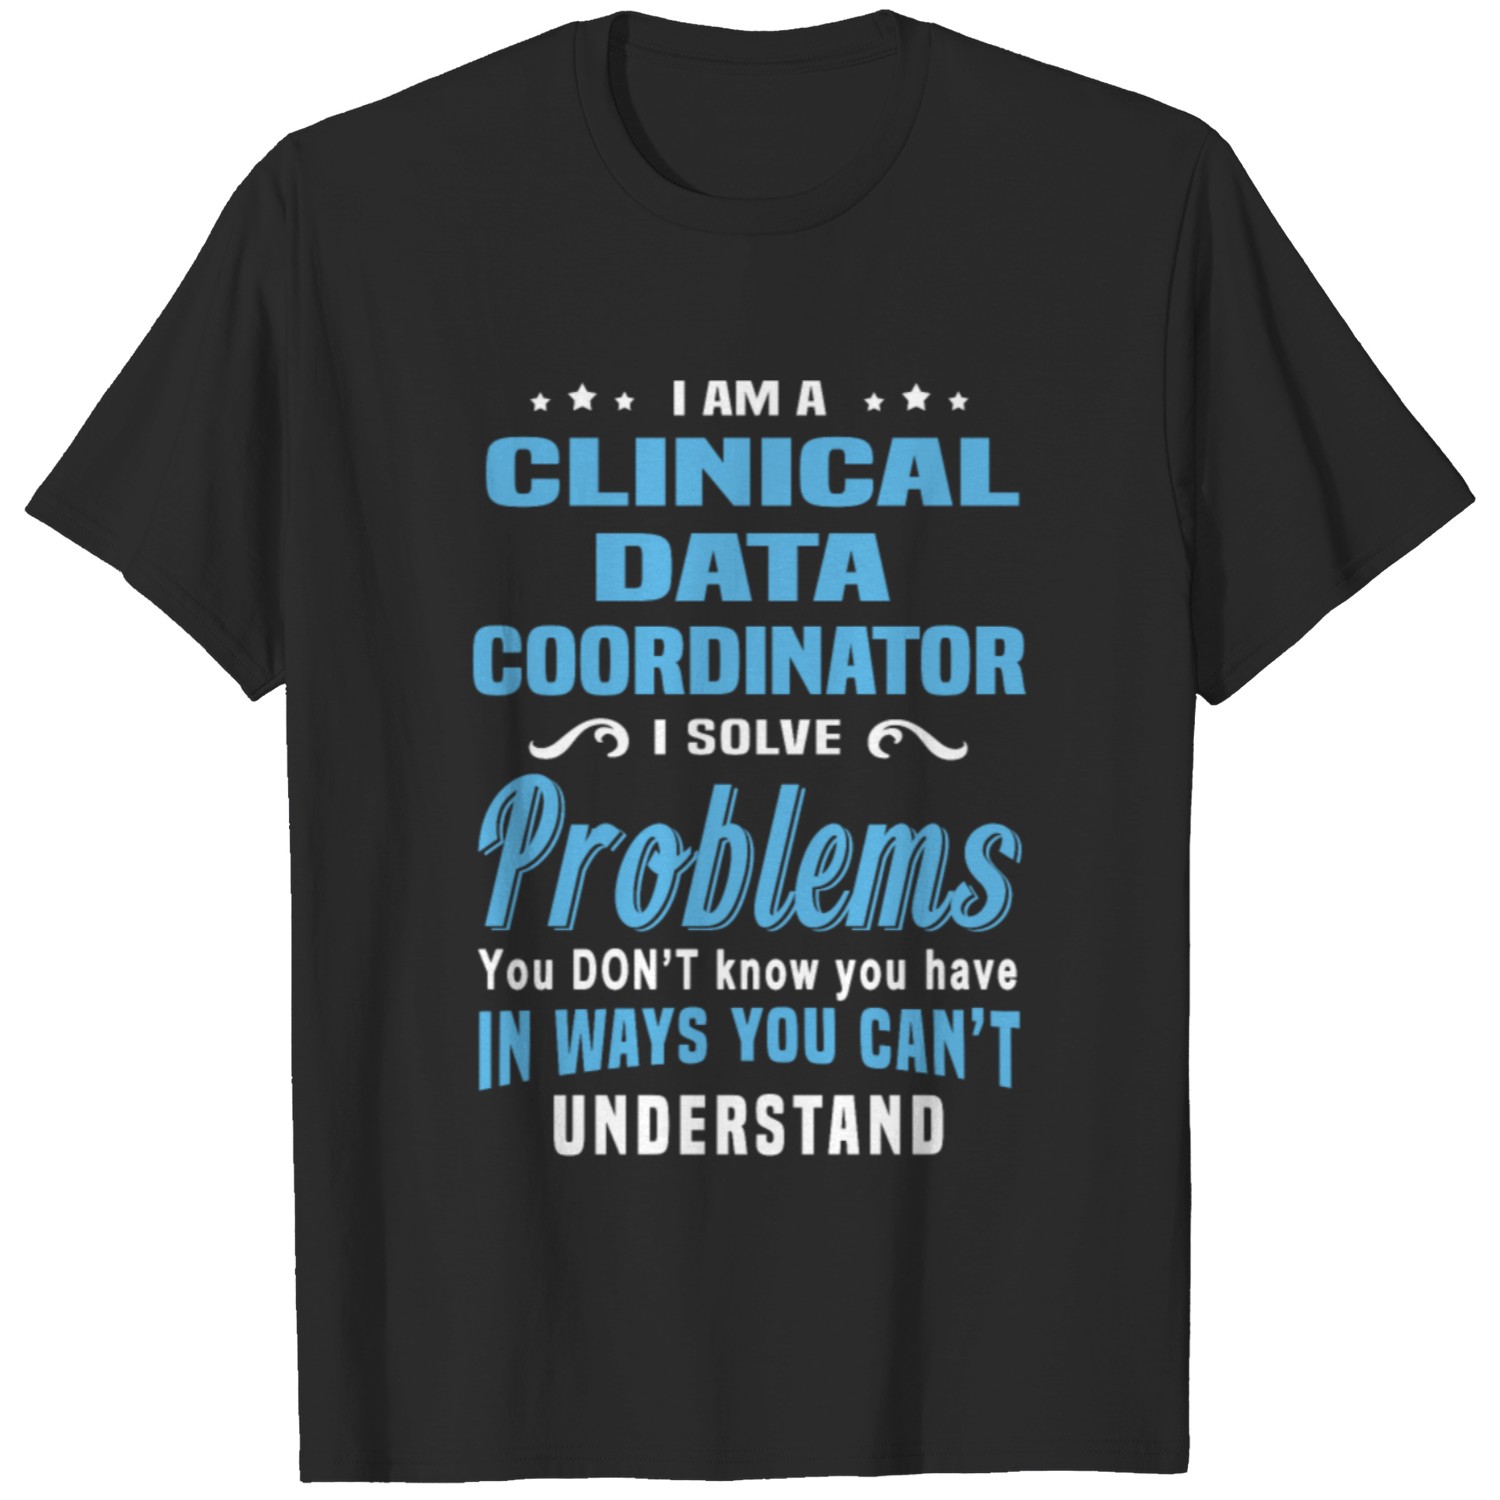 Clinical Data Coordinator T-shirt